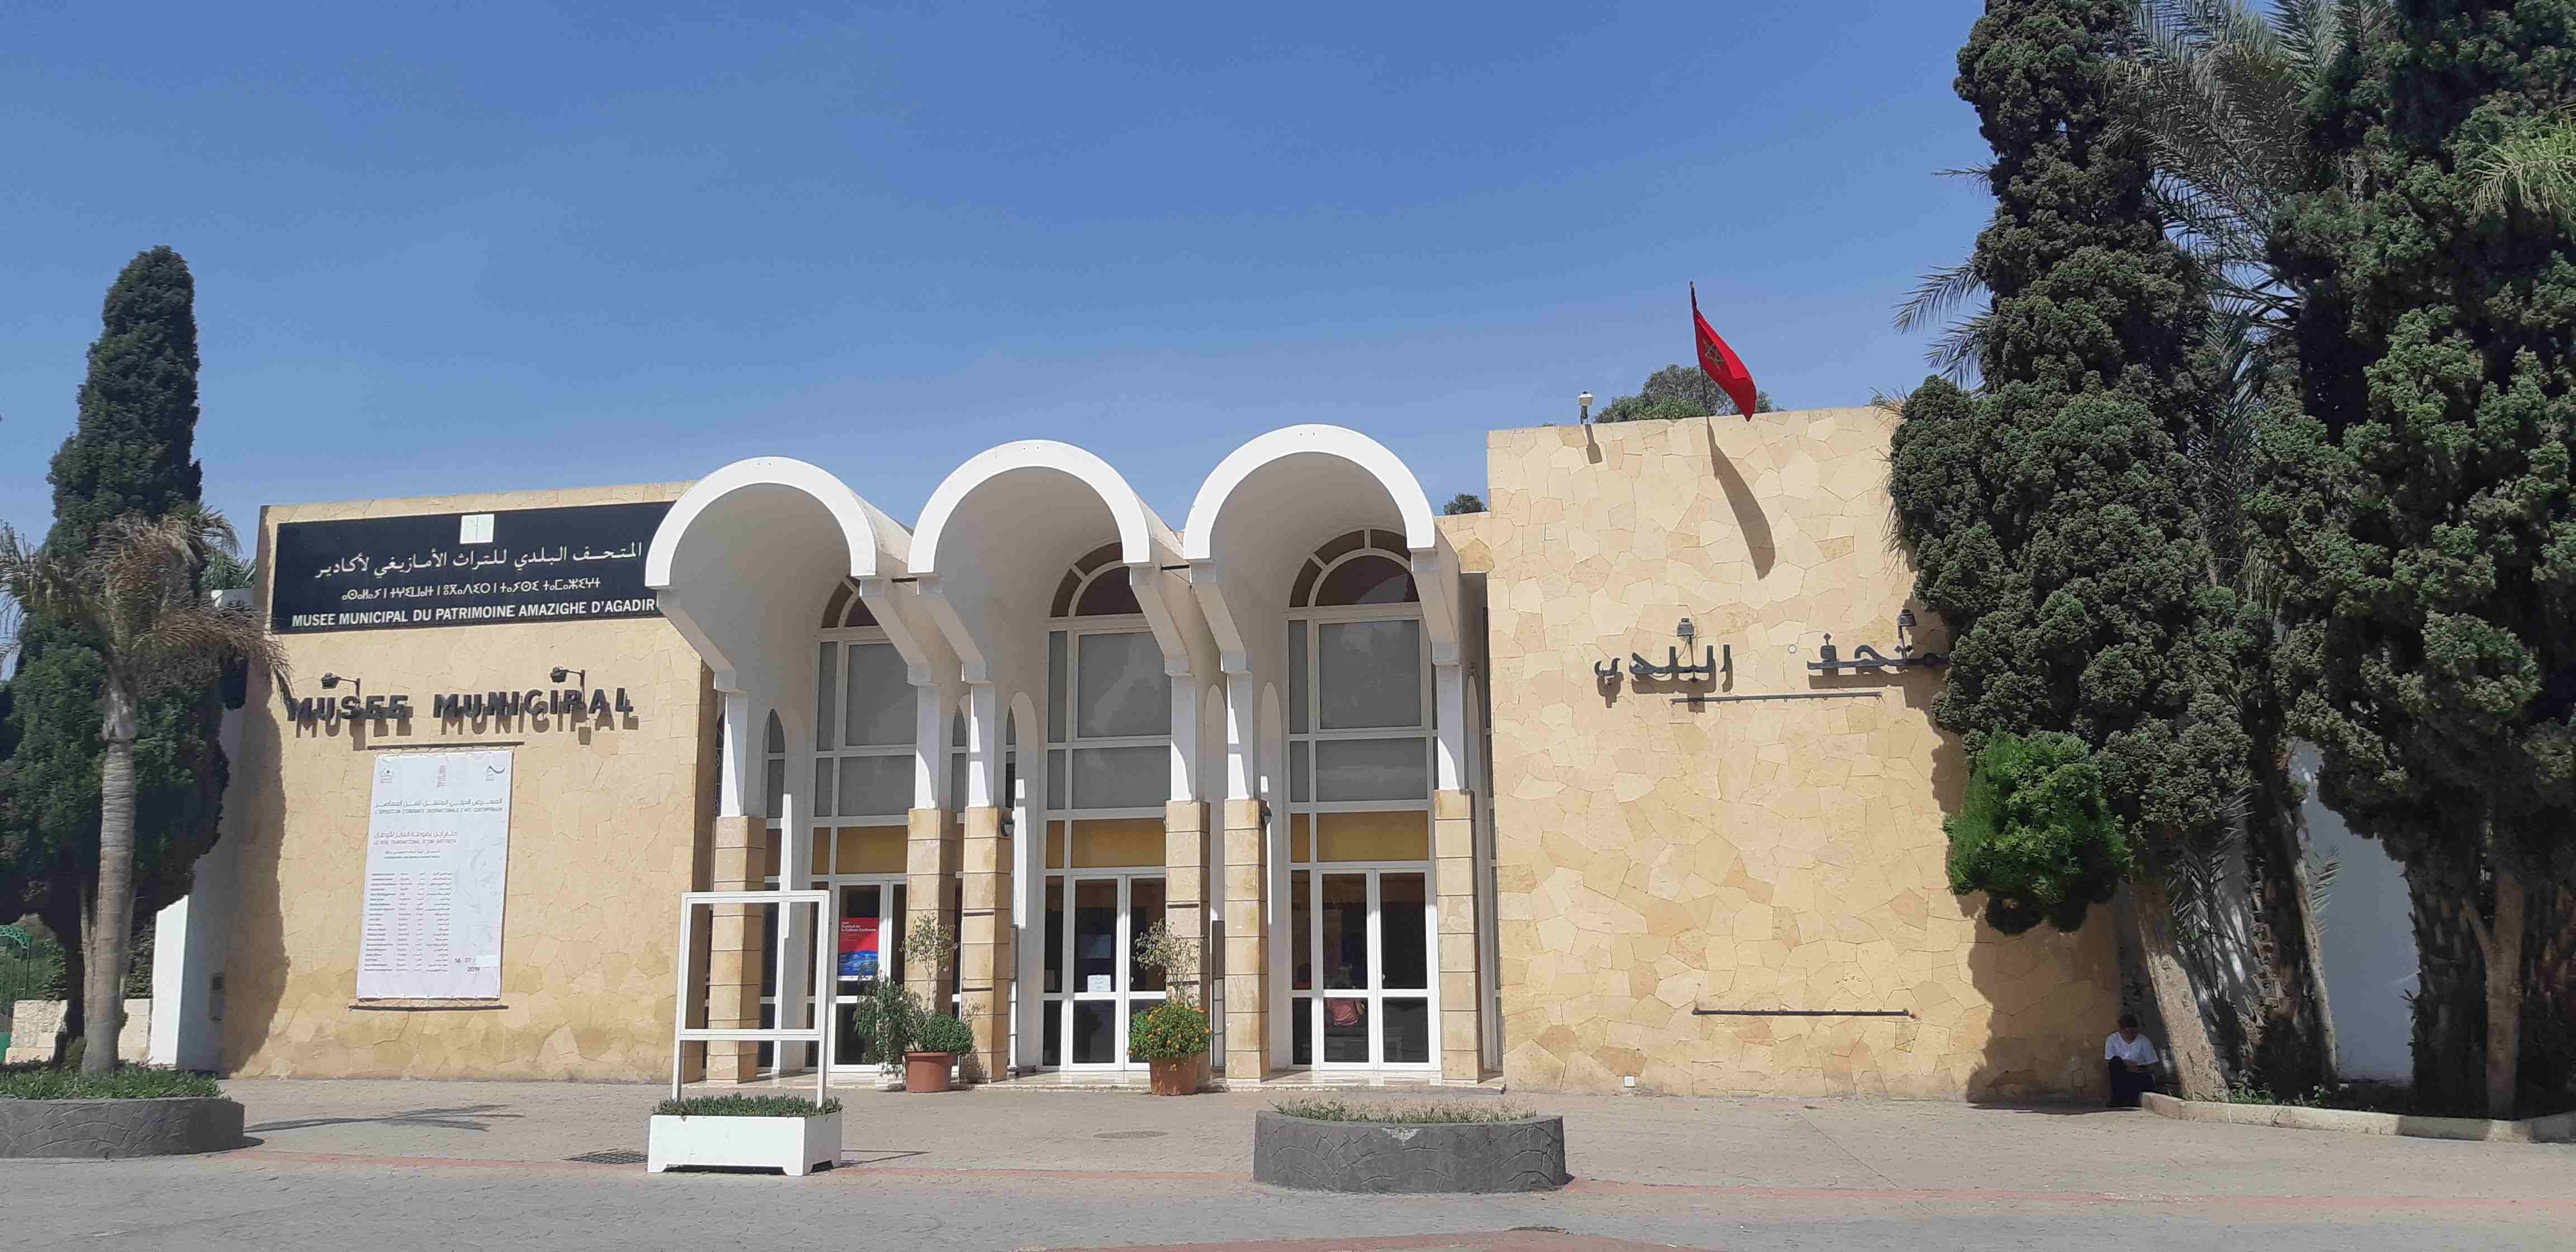 Blog museo del patrimonio amazigh